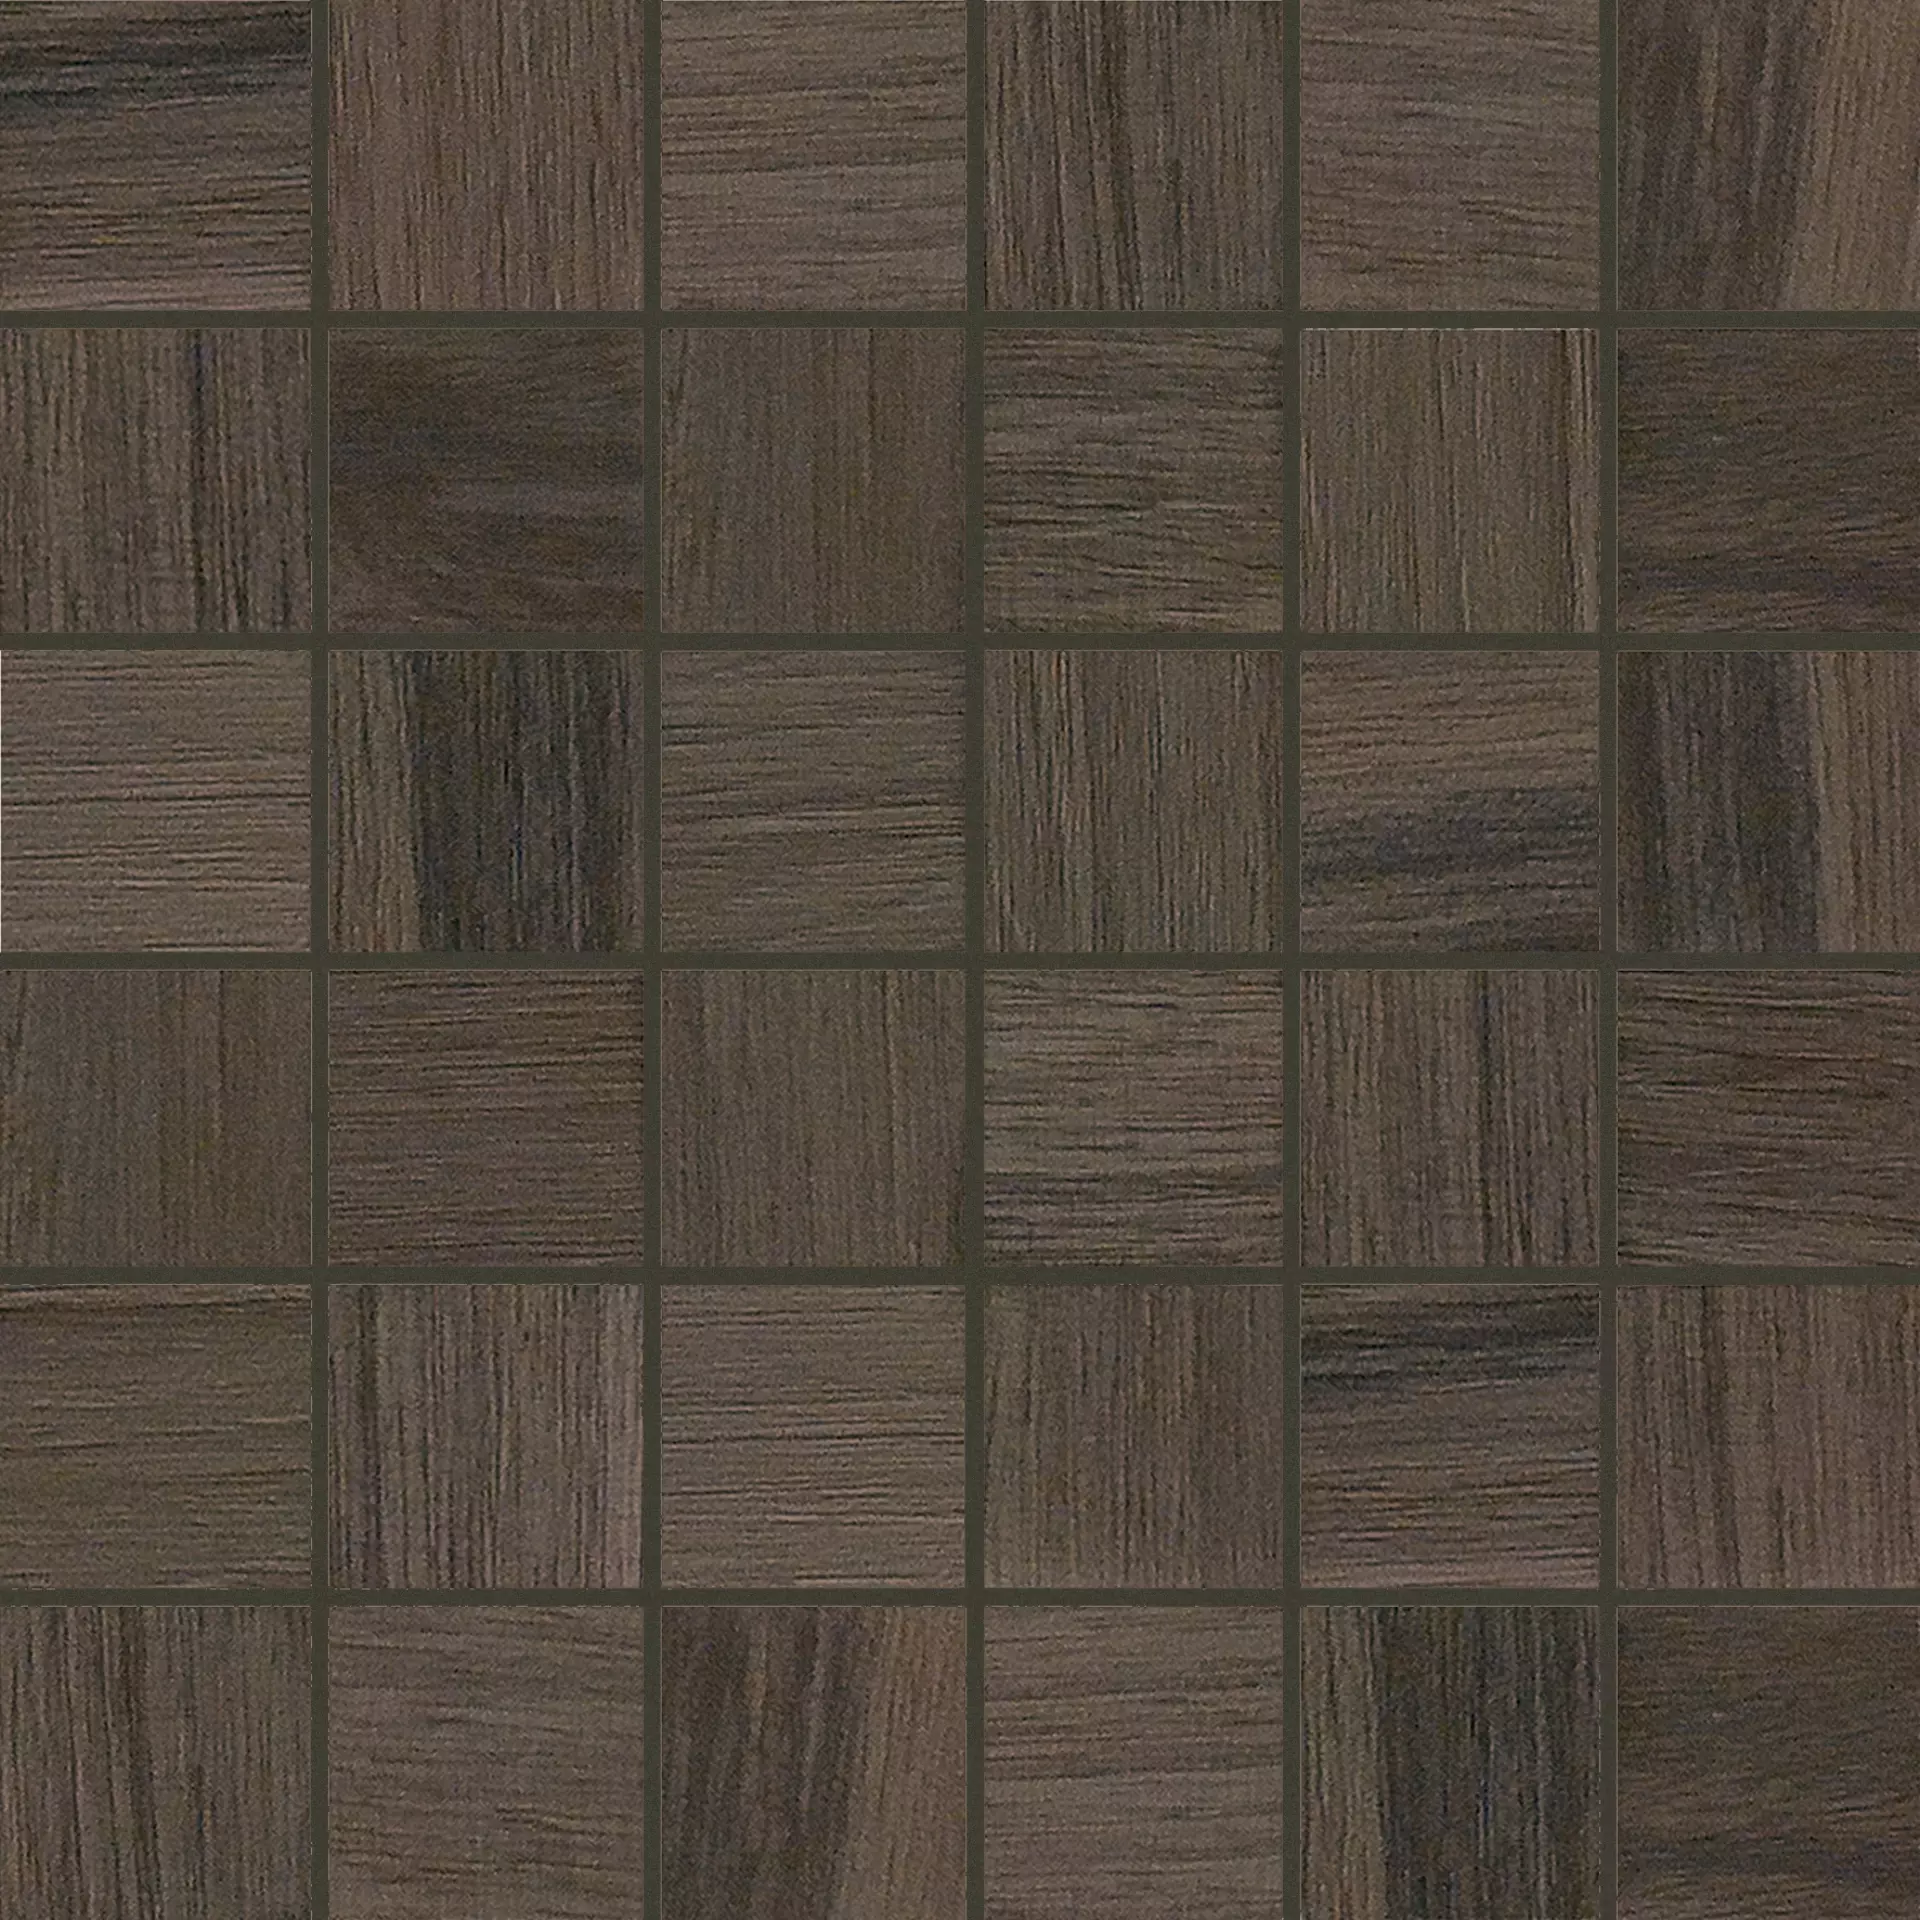 Florim Wooden Tile Of Casa Dolce Casa Brown Naturale – Matt Brown 741932 matt natur 30x30cm Mosaik Sfalsato 5x5 9mm